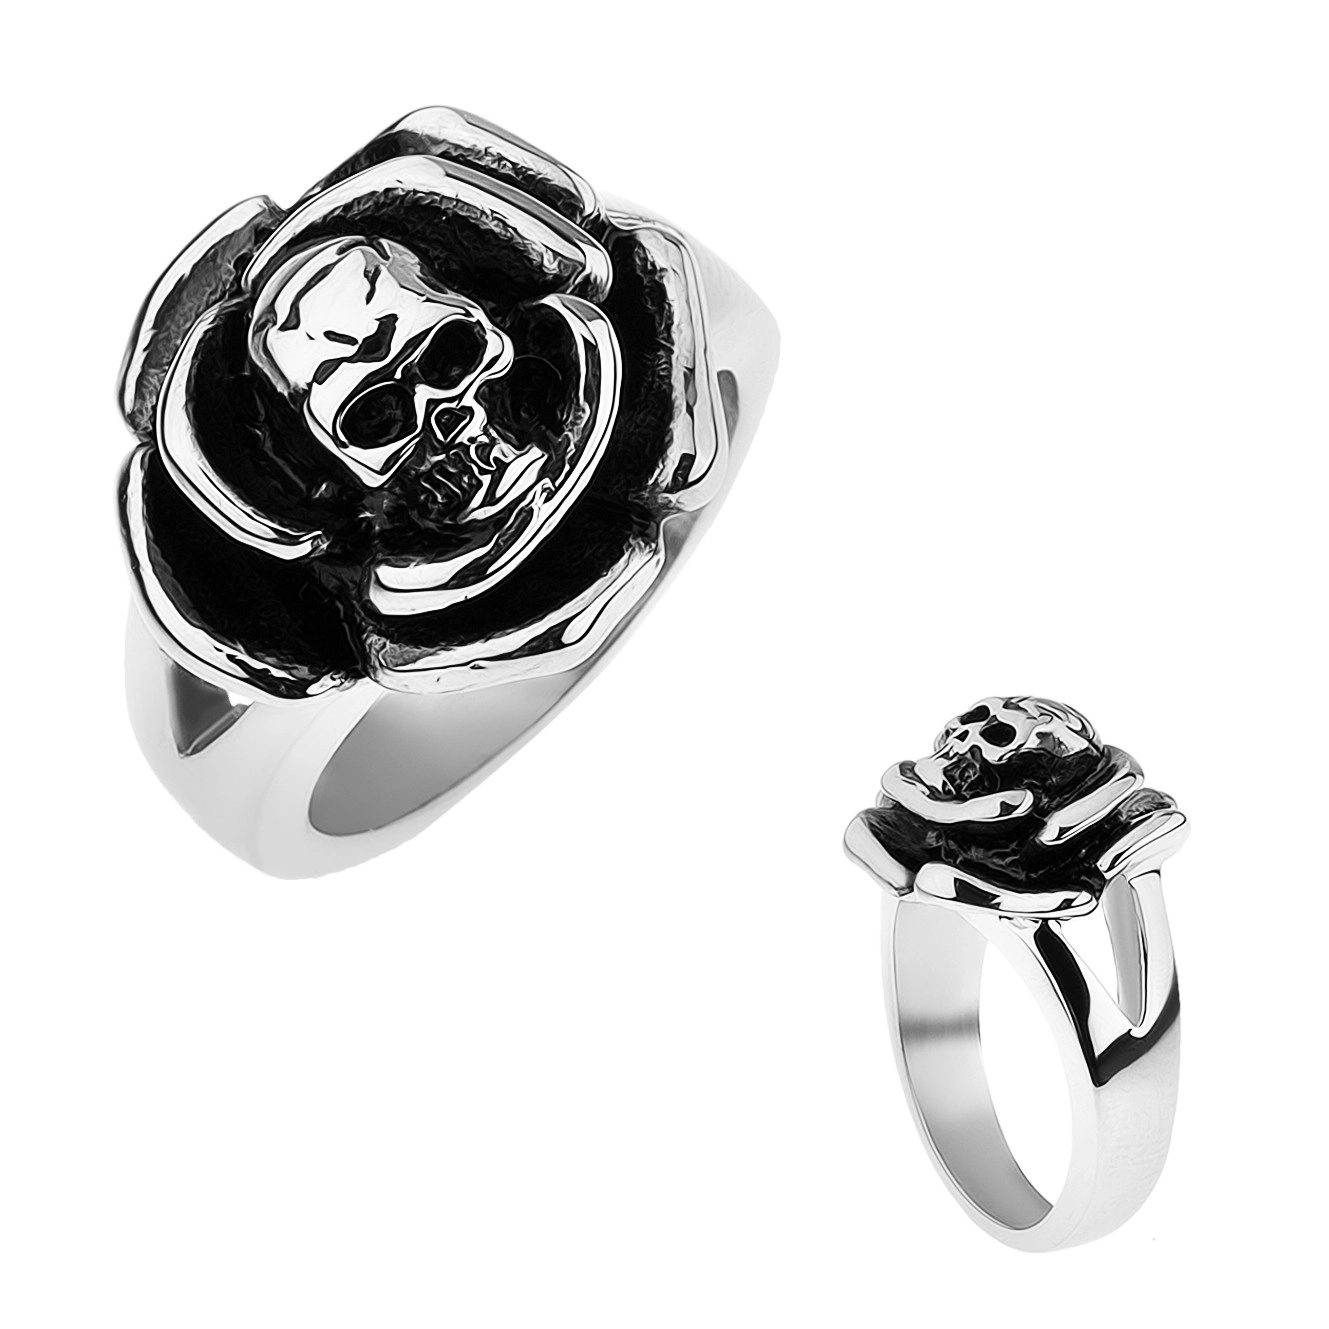 Patinovaný ocelový prsten, růže s lebkou uprostřed, rozdvojená ramena - Velikost: 65